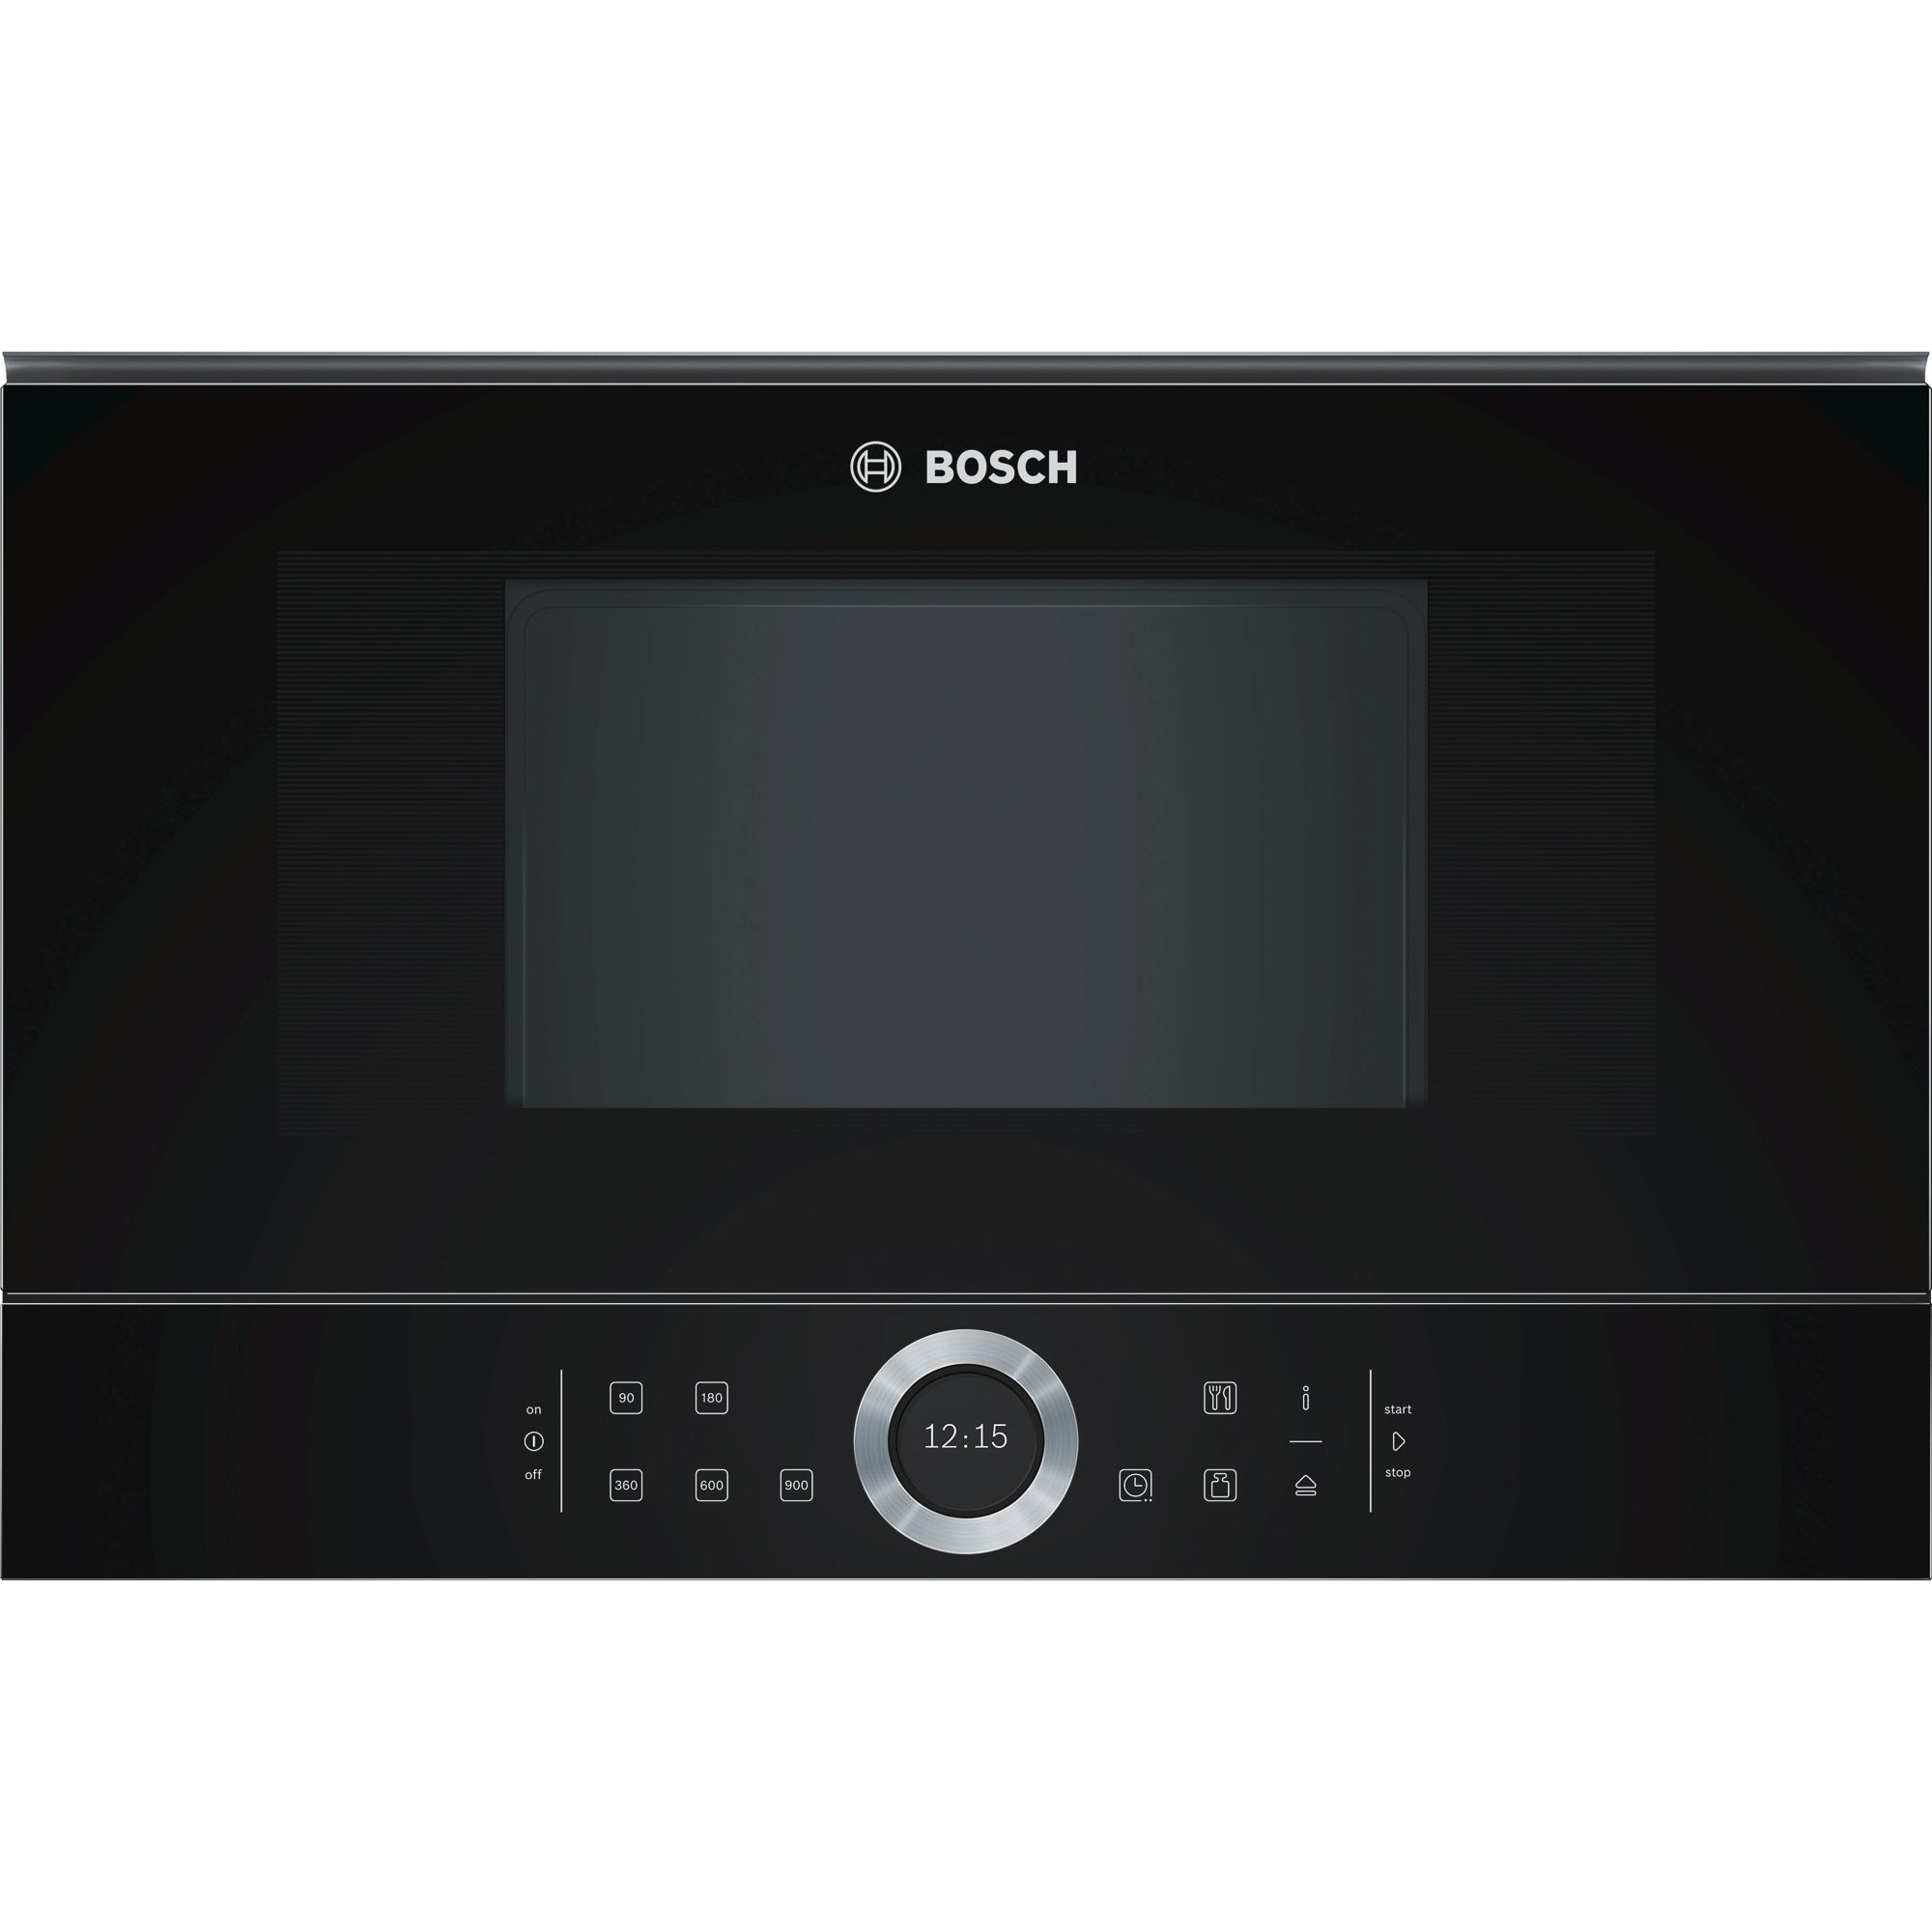 Микроволновая печь Bosch Serie 8 BFL634GB1, цвет черный